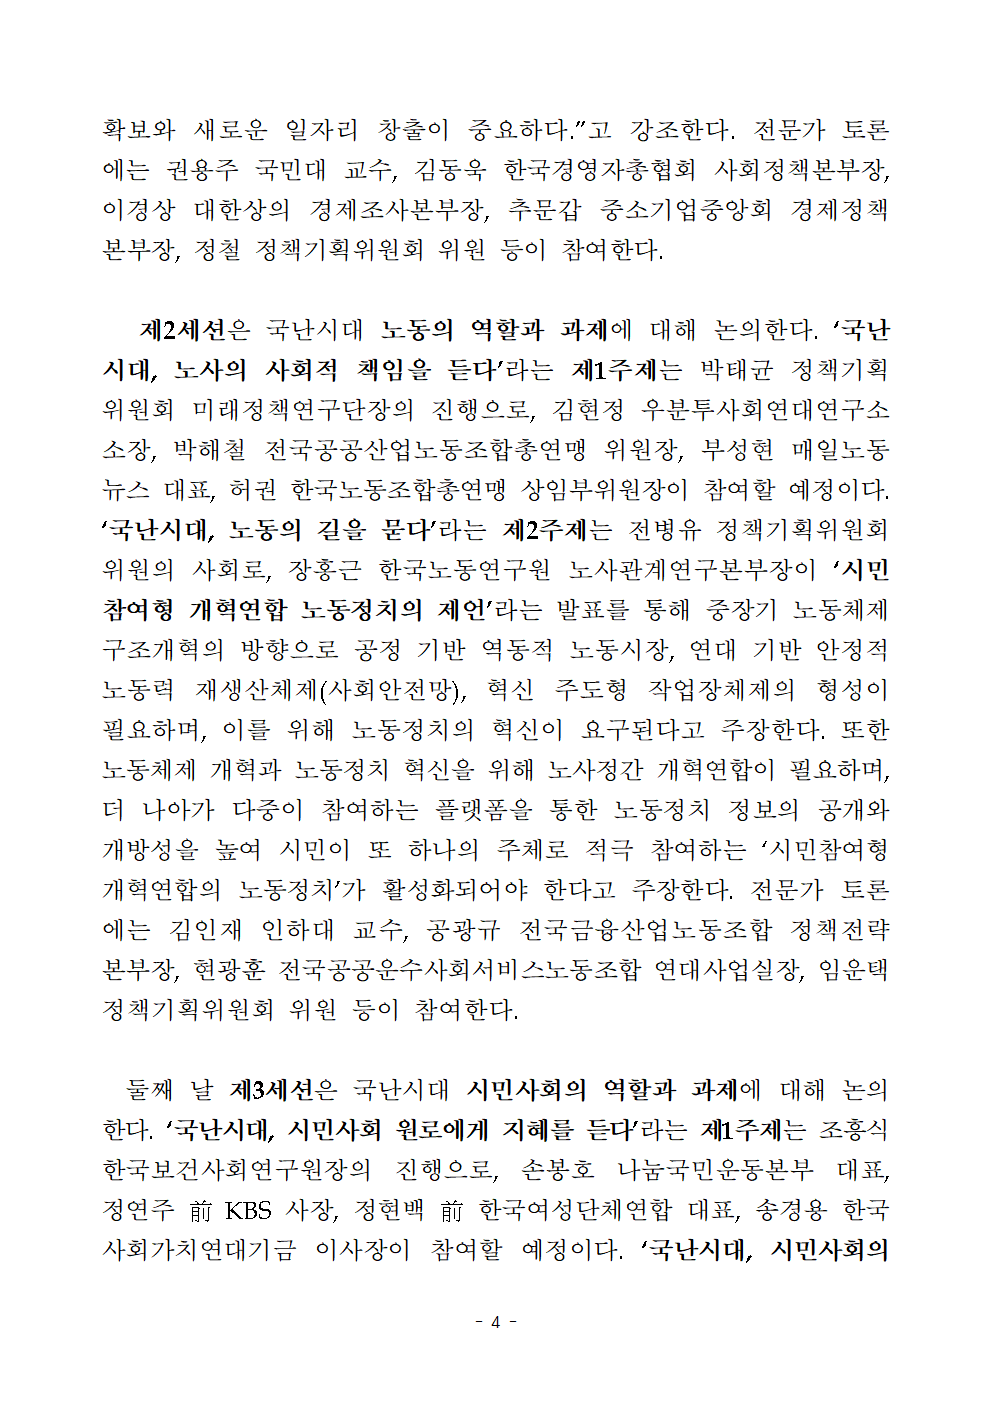 첨부파일참고 : [보도자료] 2020 한국사회비전회의 개최.hwp